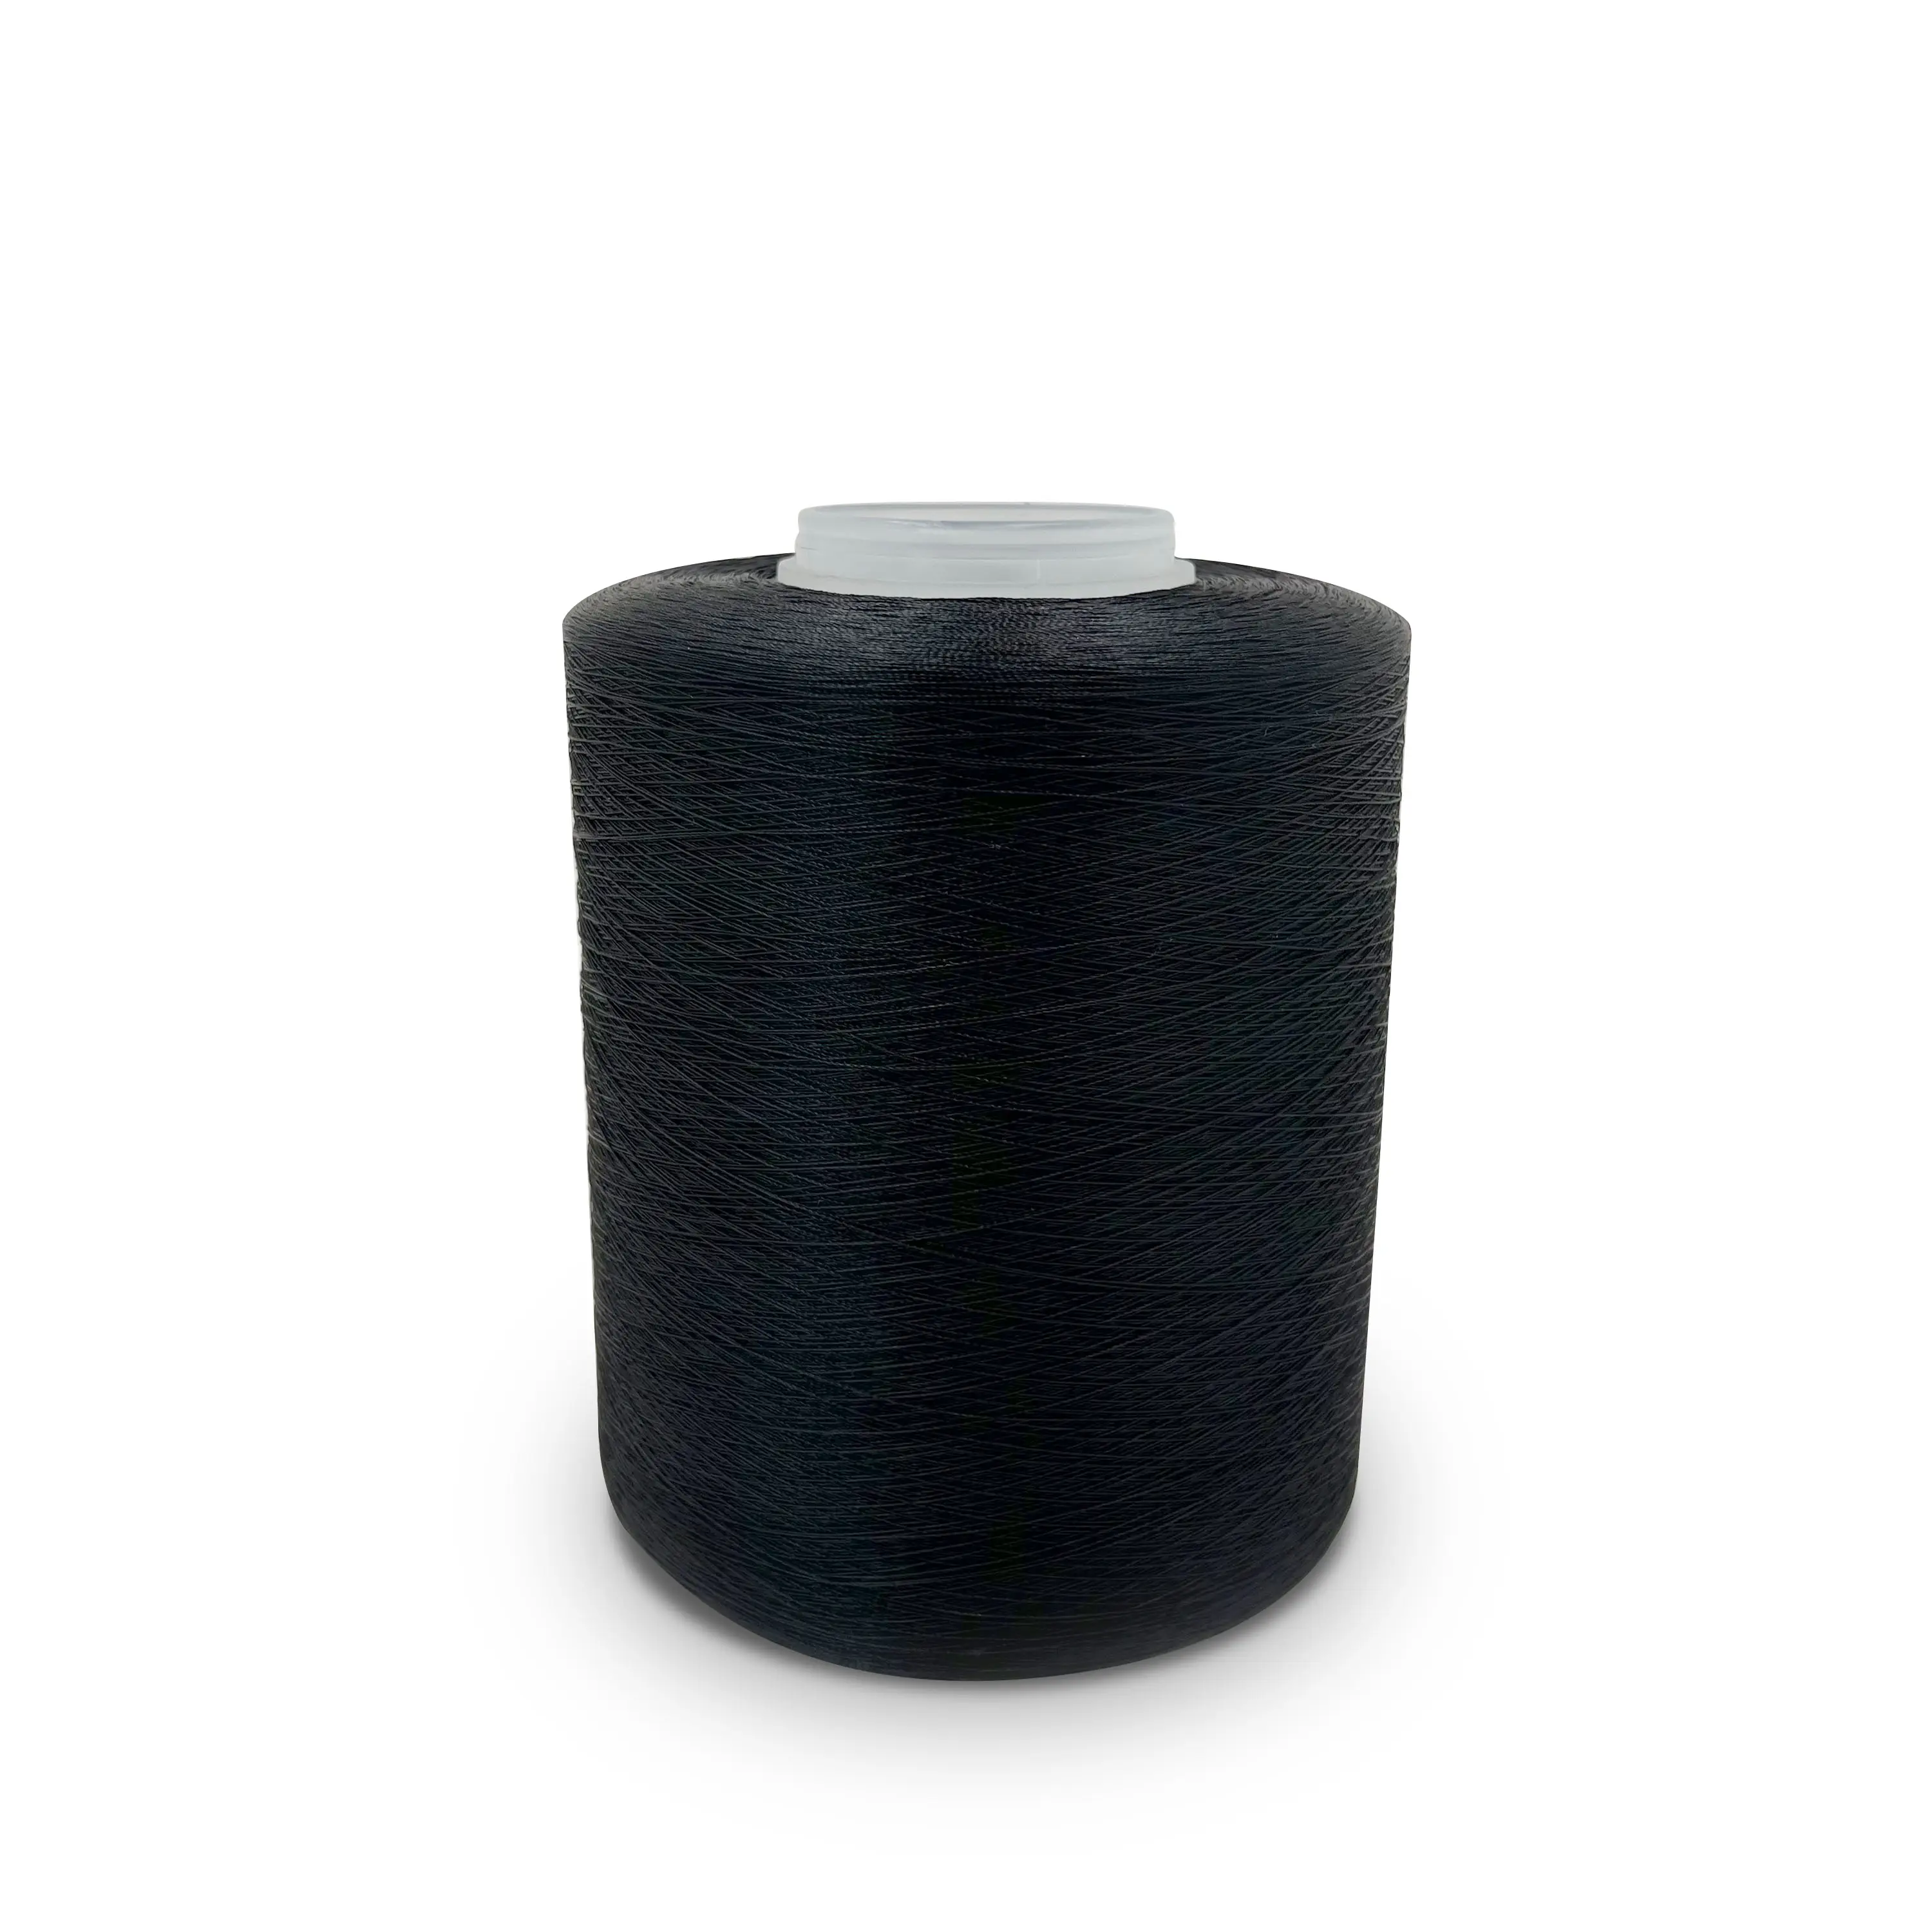 Precio competitivo Material de alta calidad 100% hilado 40 hilo de coser de poliéster industrial